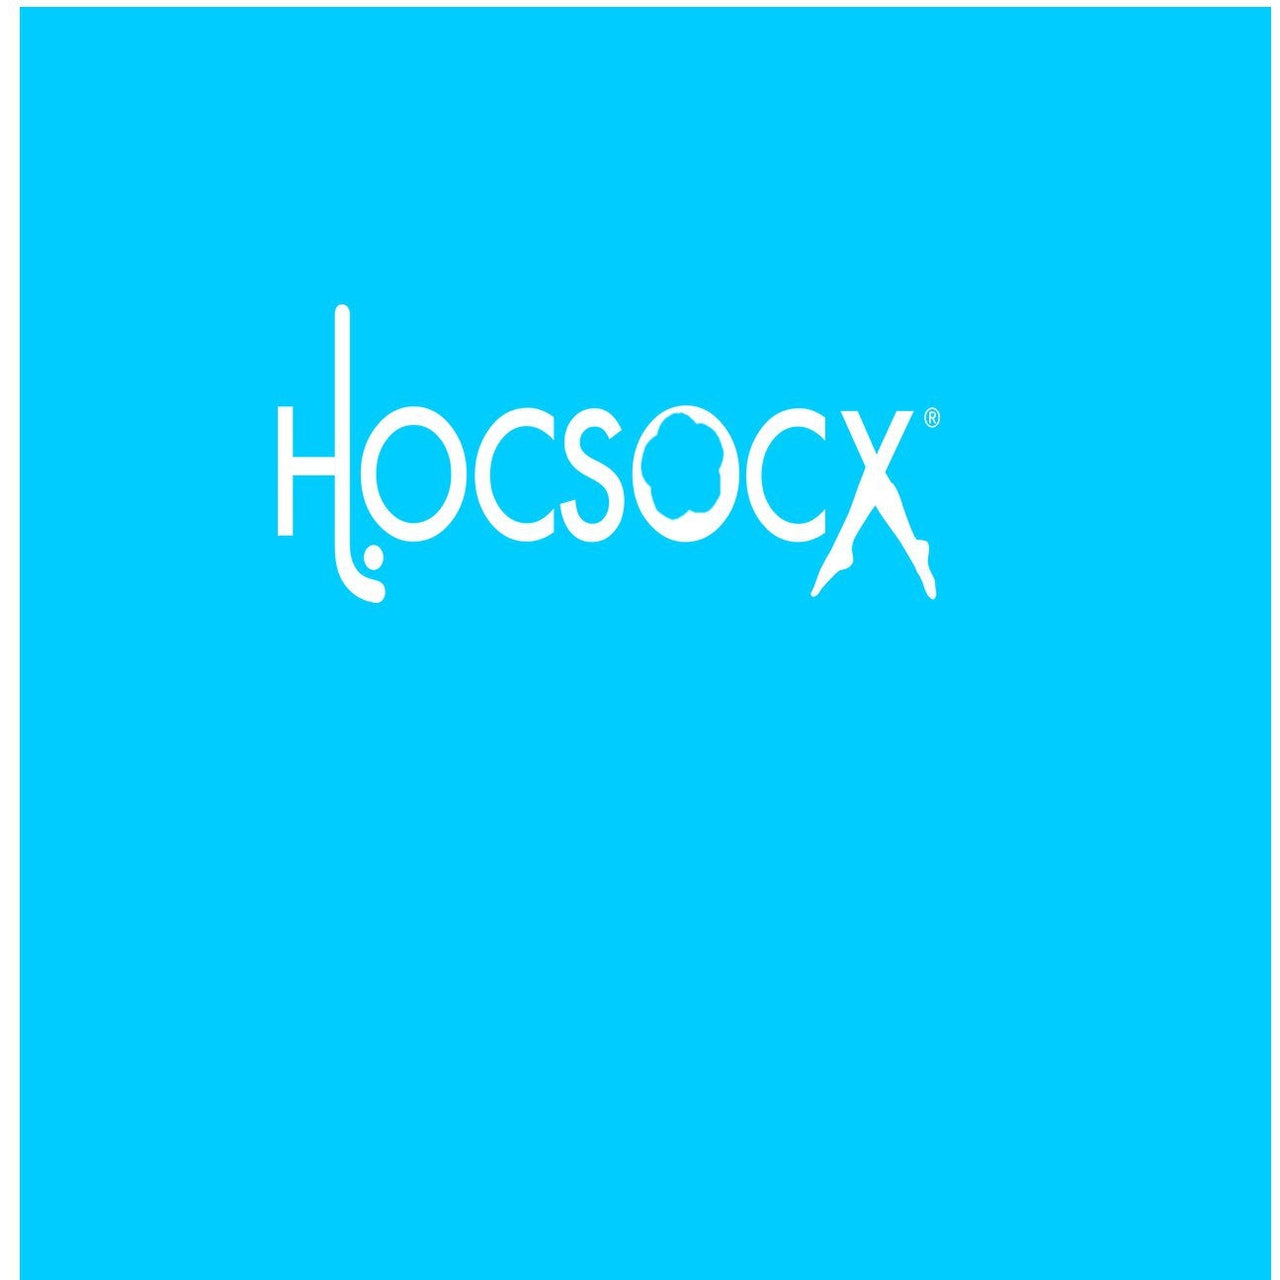 Carolina Blue Socks - Hocsocx Inc